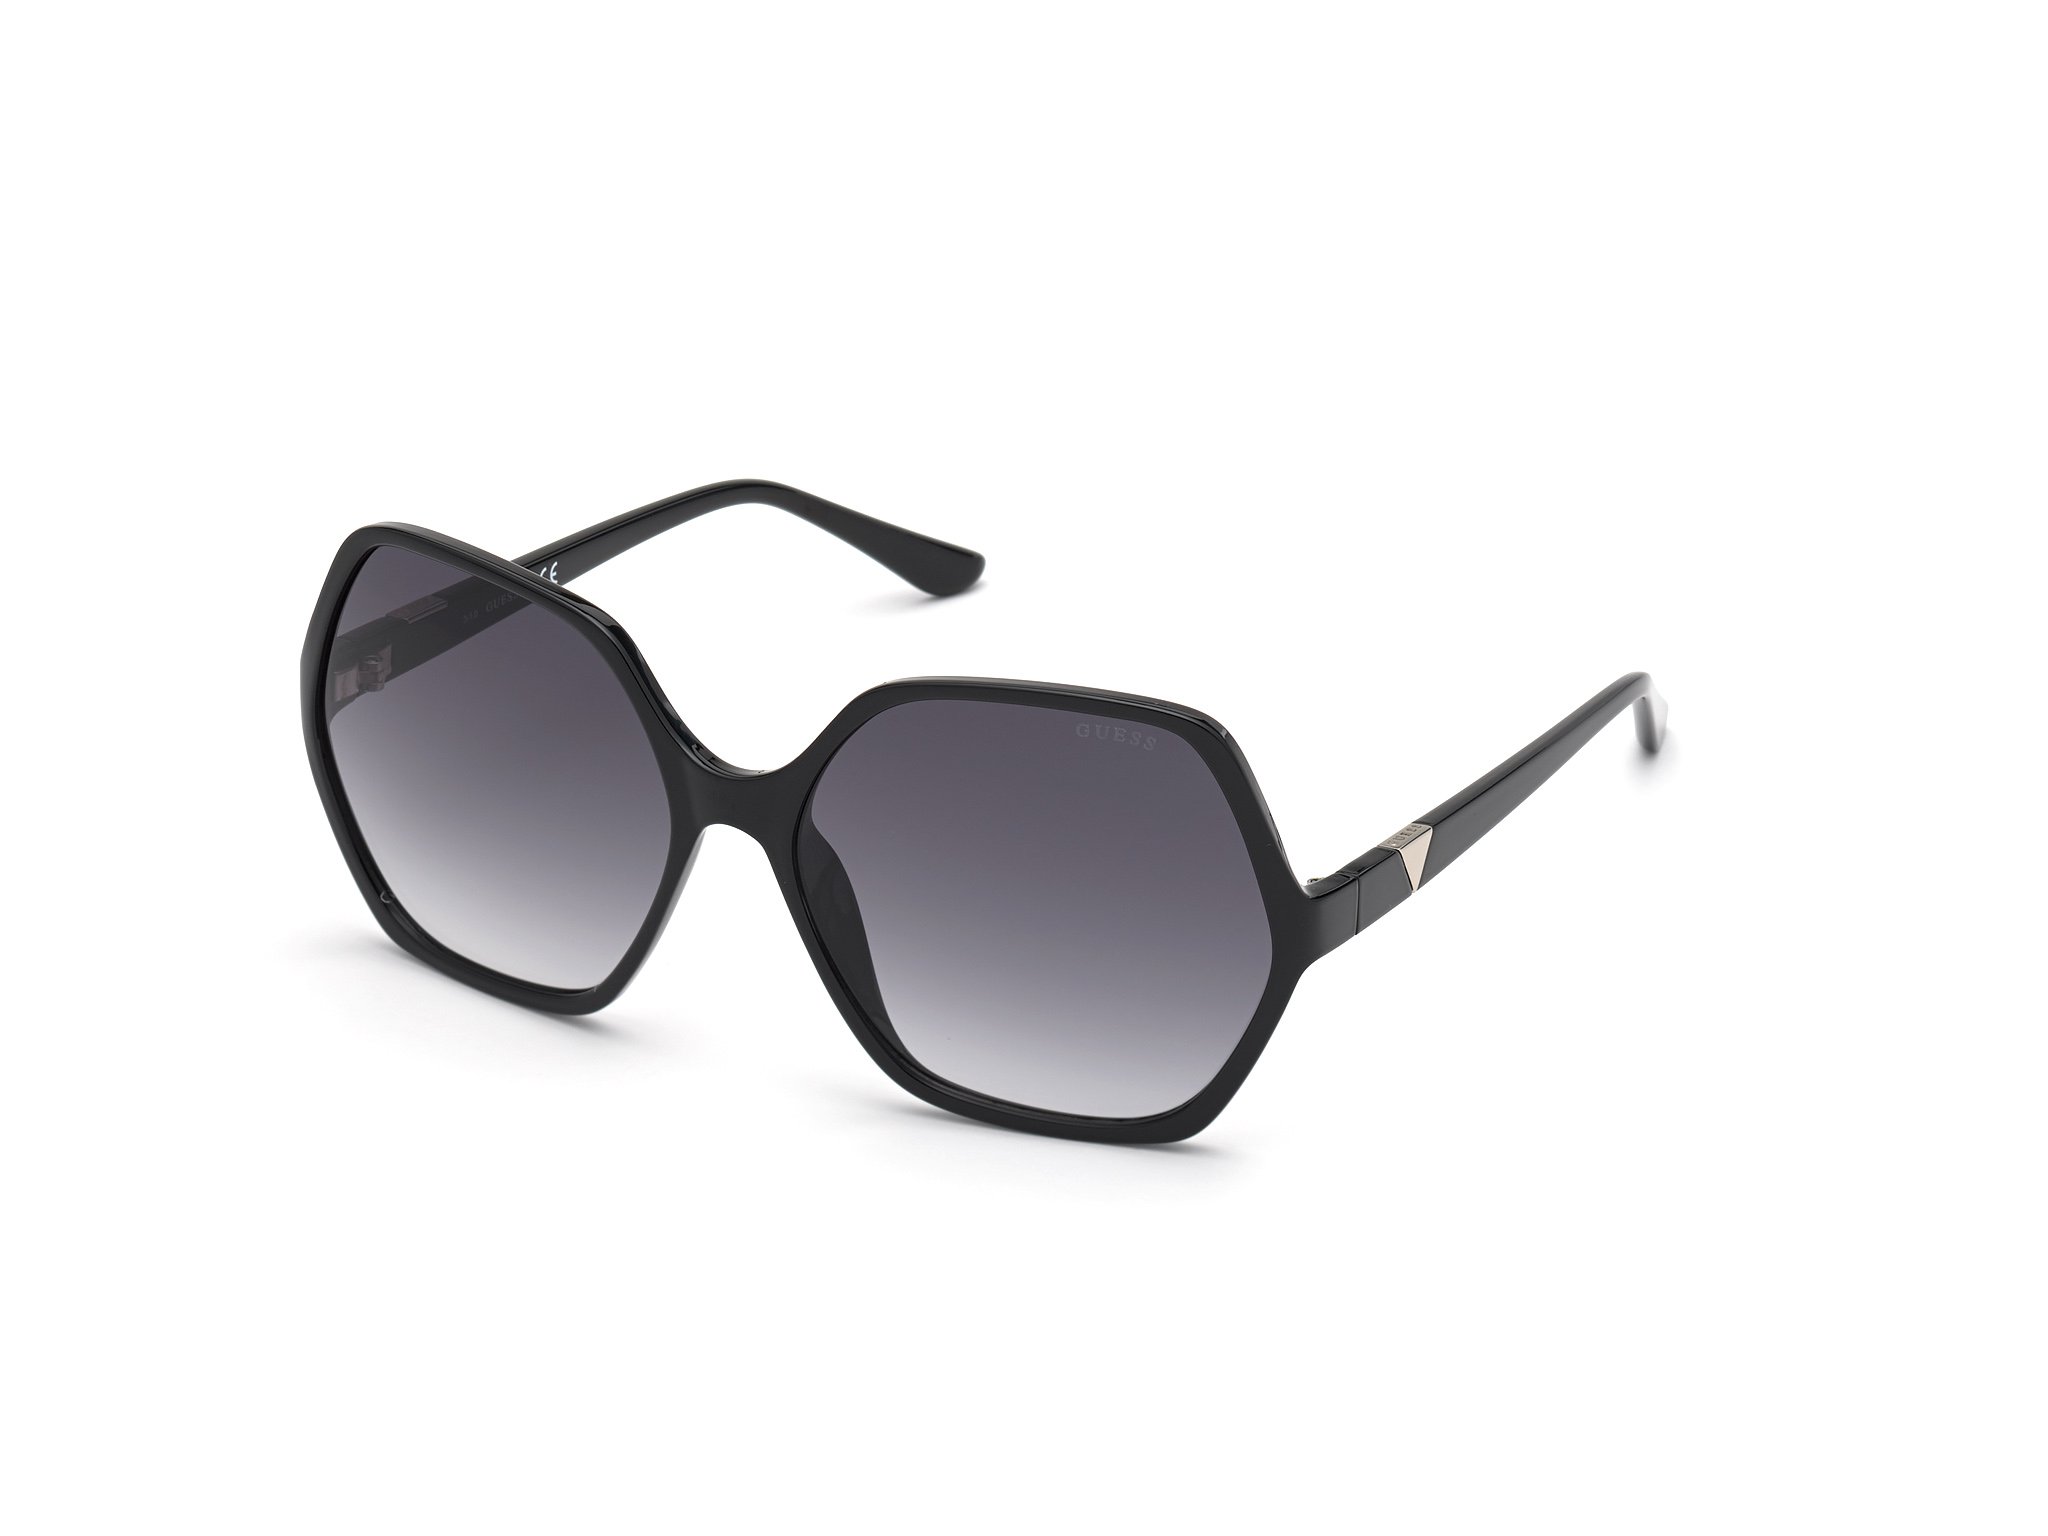 Das Bild zeigt die Sonnenbrille GU7747 01B von der Marke Guess in schwarz.